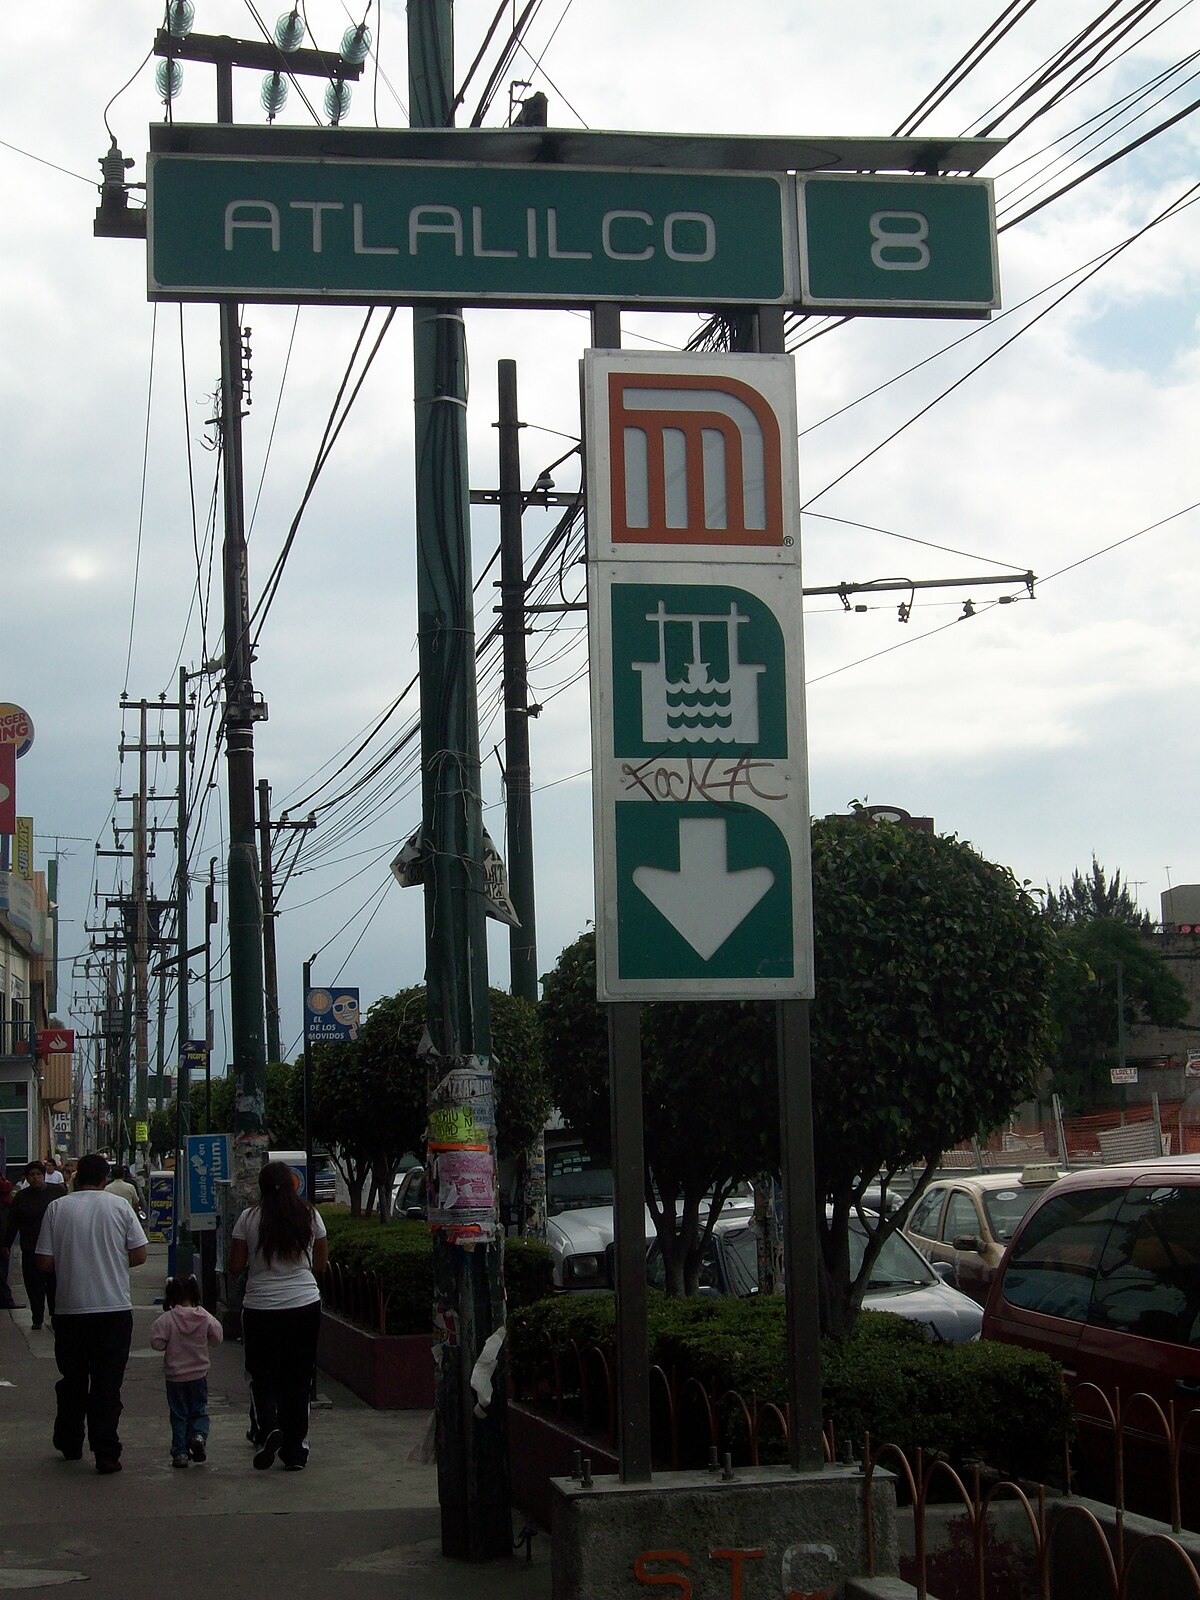 Atlalilco (estación) - Wikipedia, la enciclopedia libre